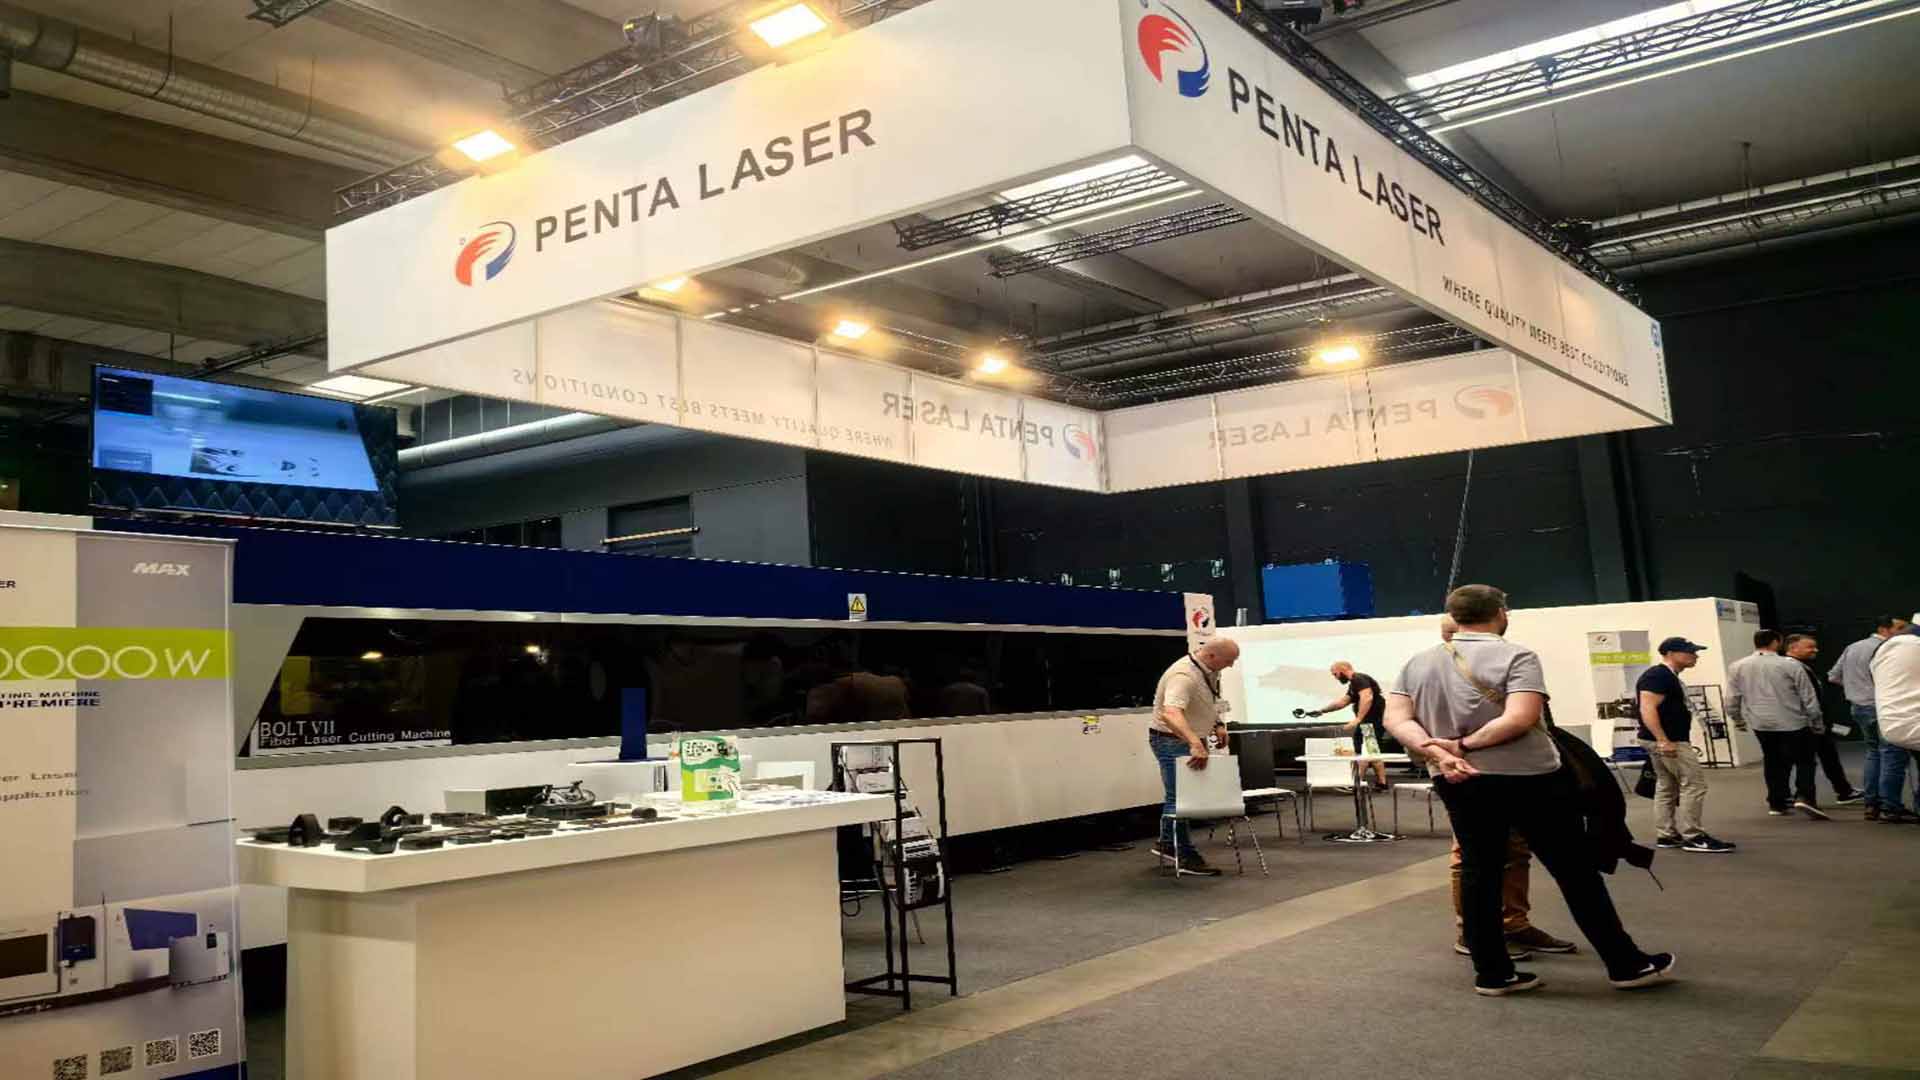 Bélgica y Tailandia trabajan juntas en exposiciones duales, la serie Penta Laser BOLT 7 atrae la atención mundial